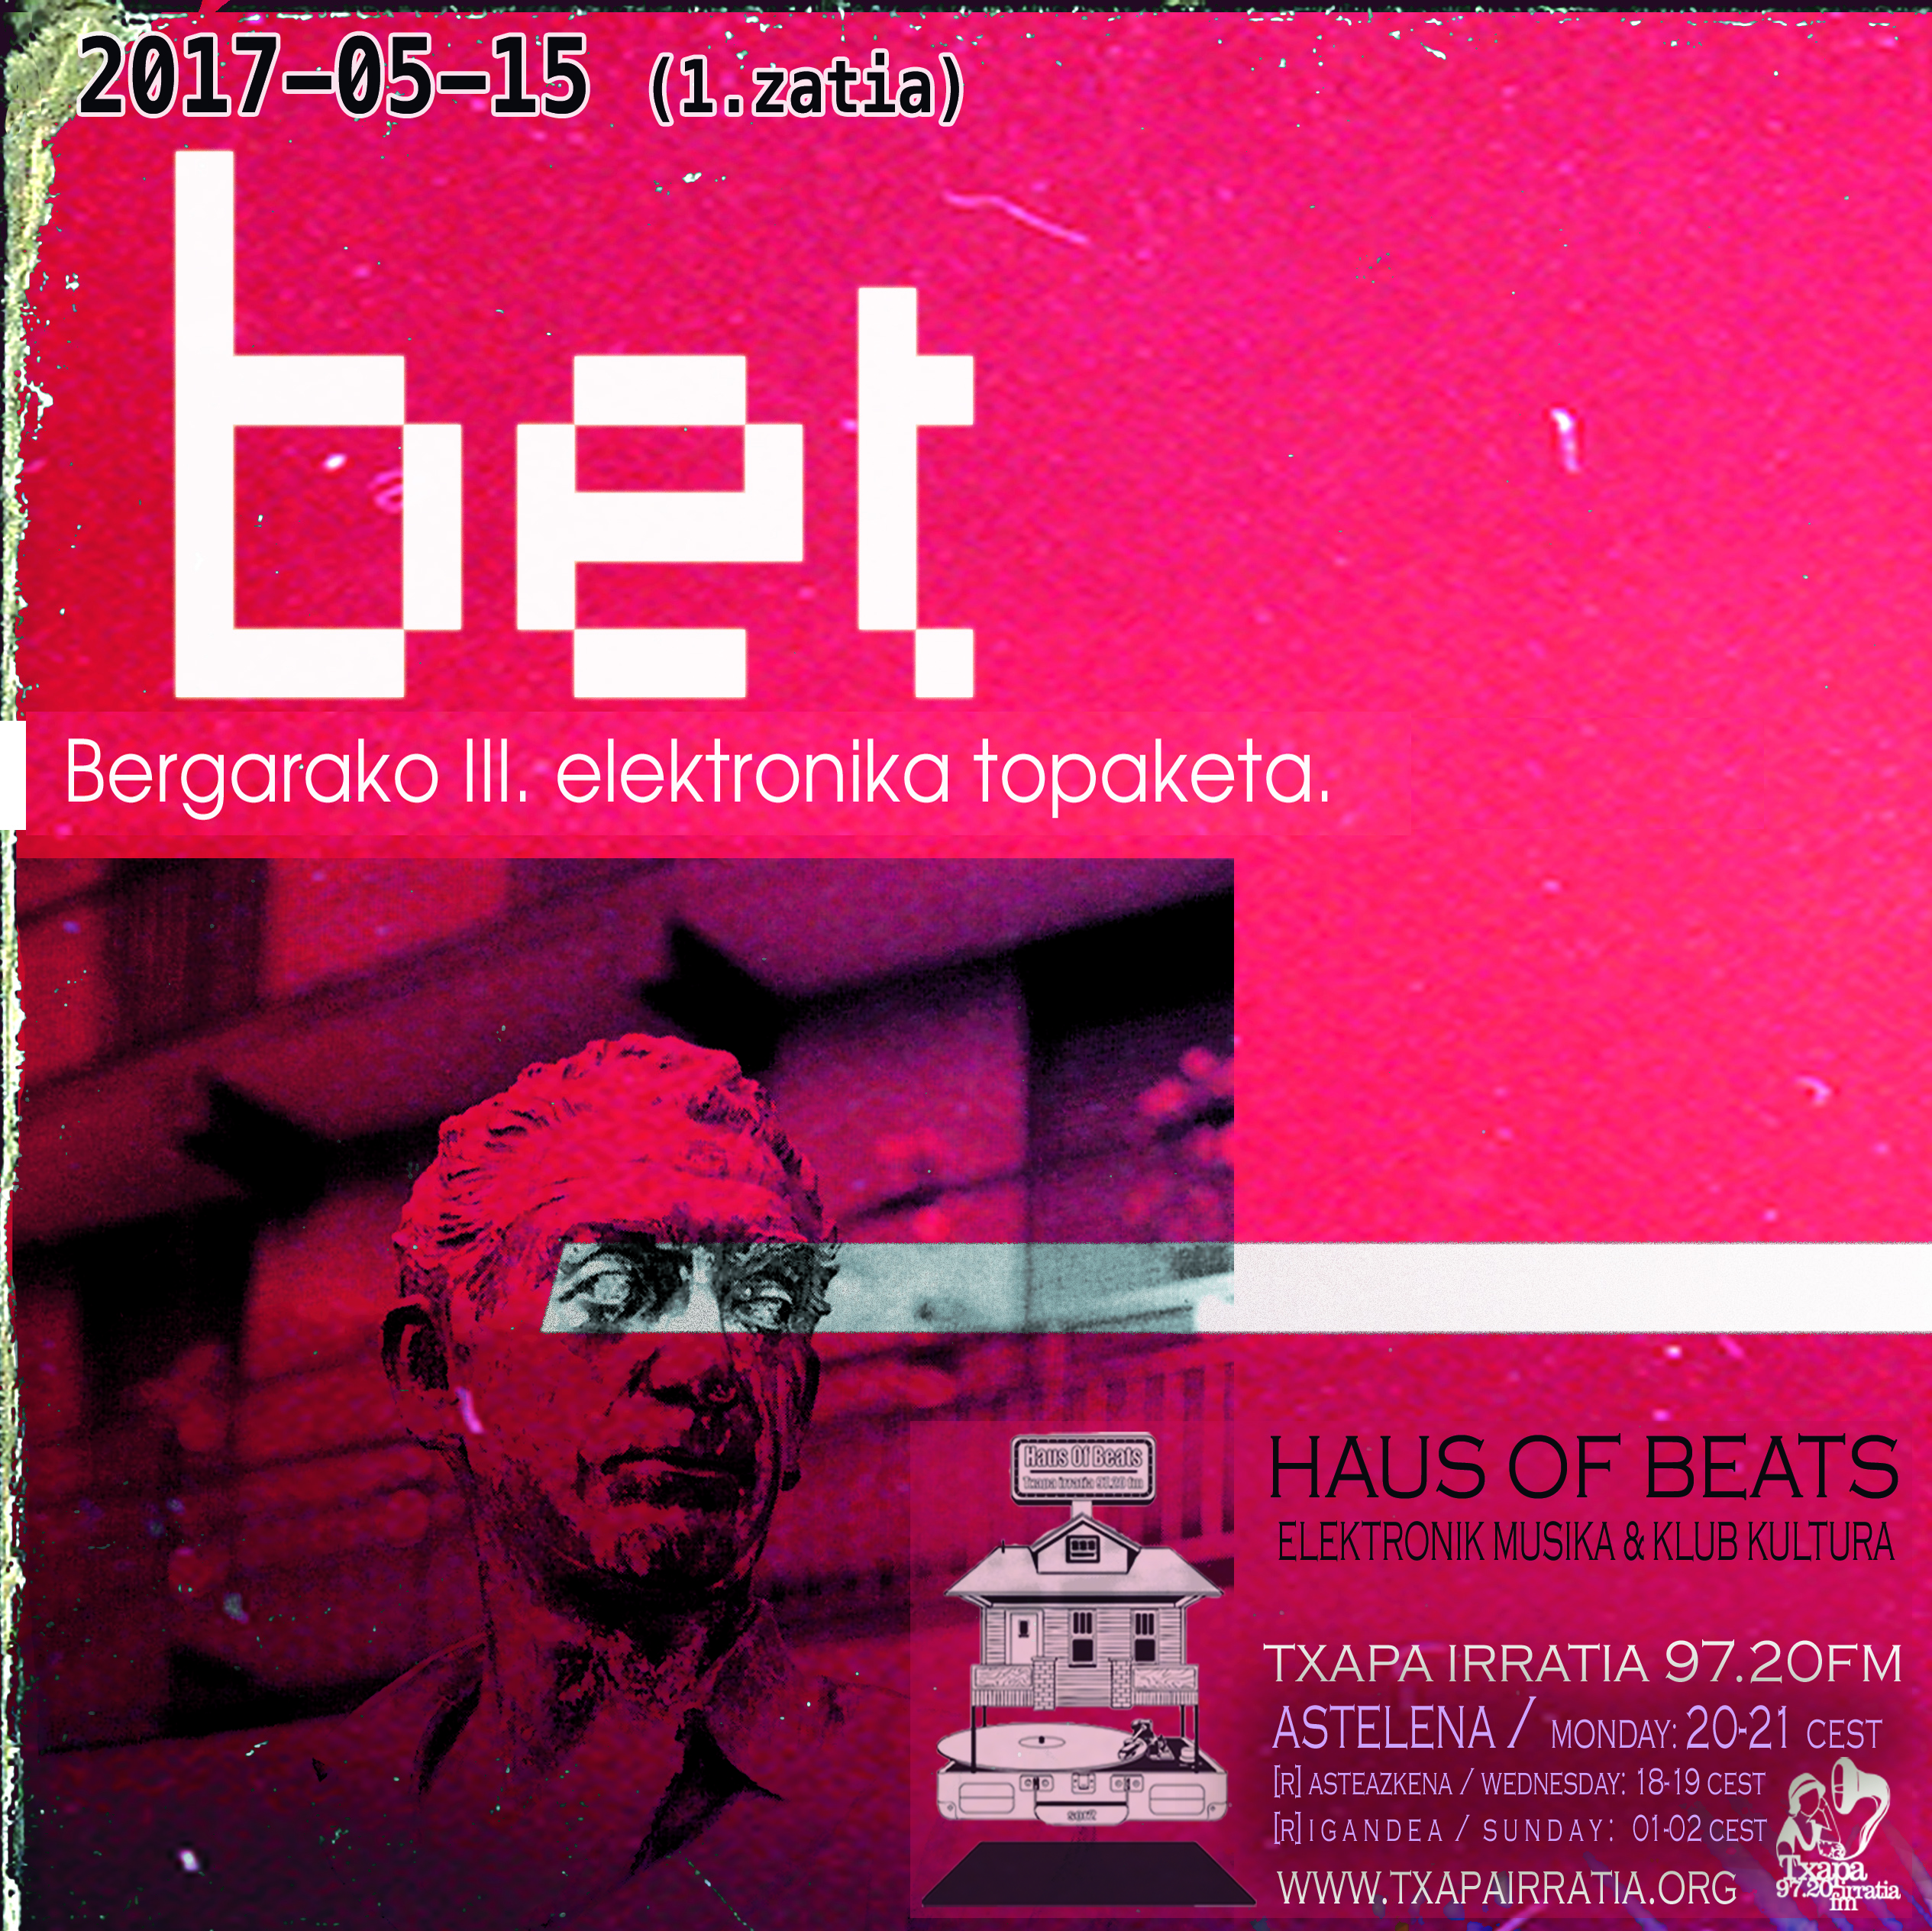 HAUS OF BEATS 73 – BET – Bergarako III. Elektronika Topaketa (1.zatia)